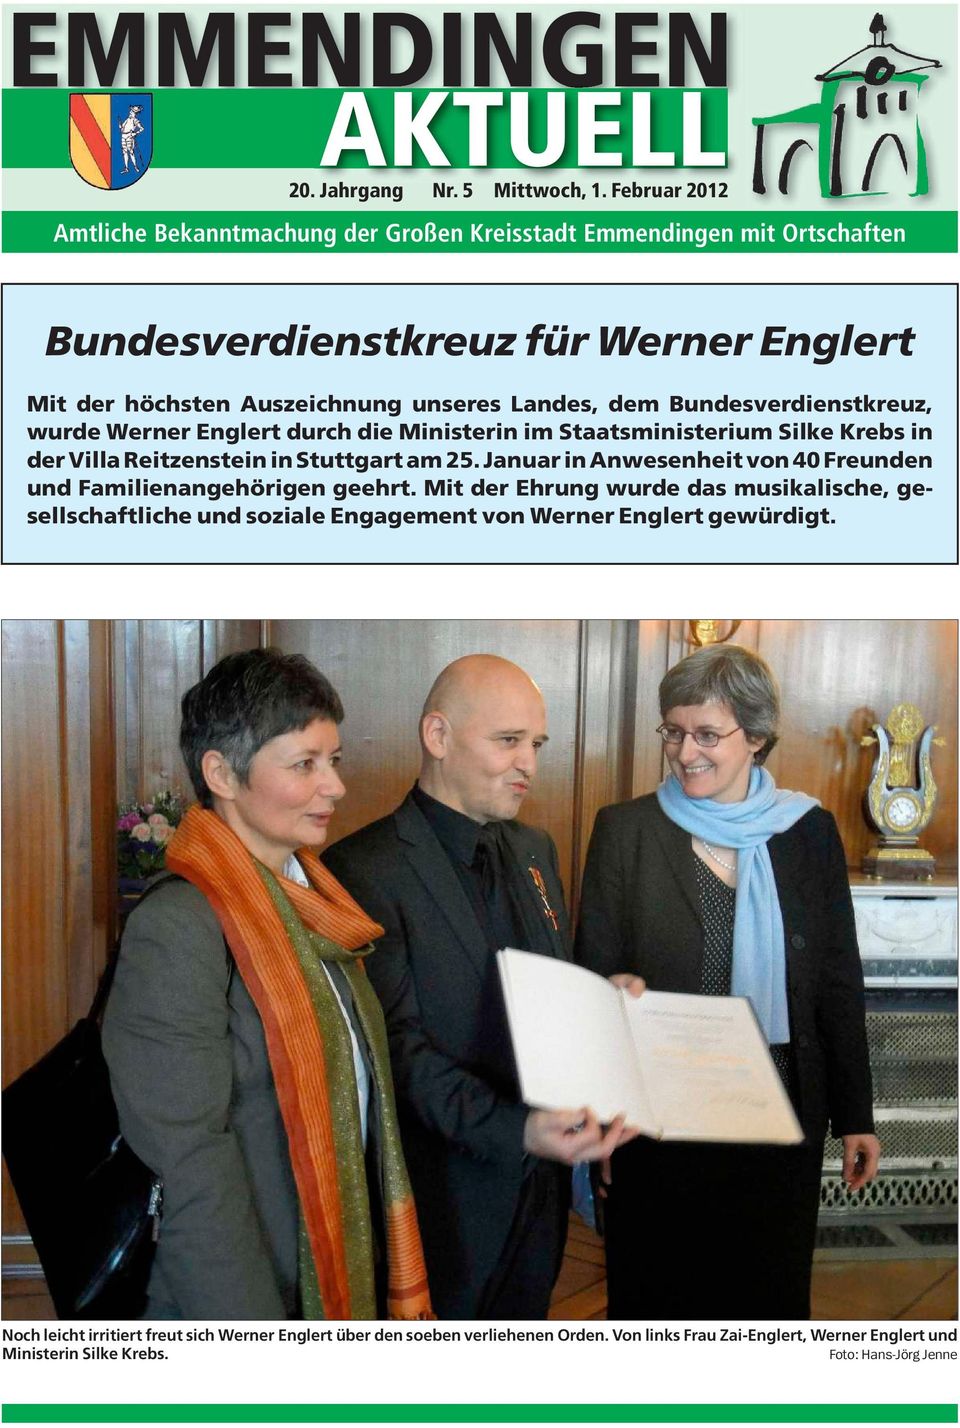 Bundesverdienstkreuz, wurde Werner Englert durch die Ministerin im Staatsministerium Silke Krebs in der Villa Reitzenstein in Stuttgart am 25.